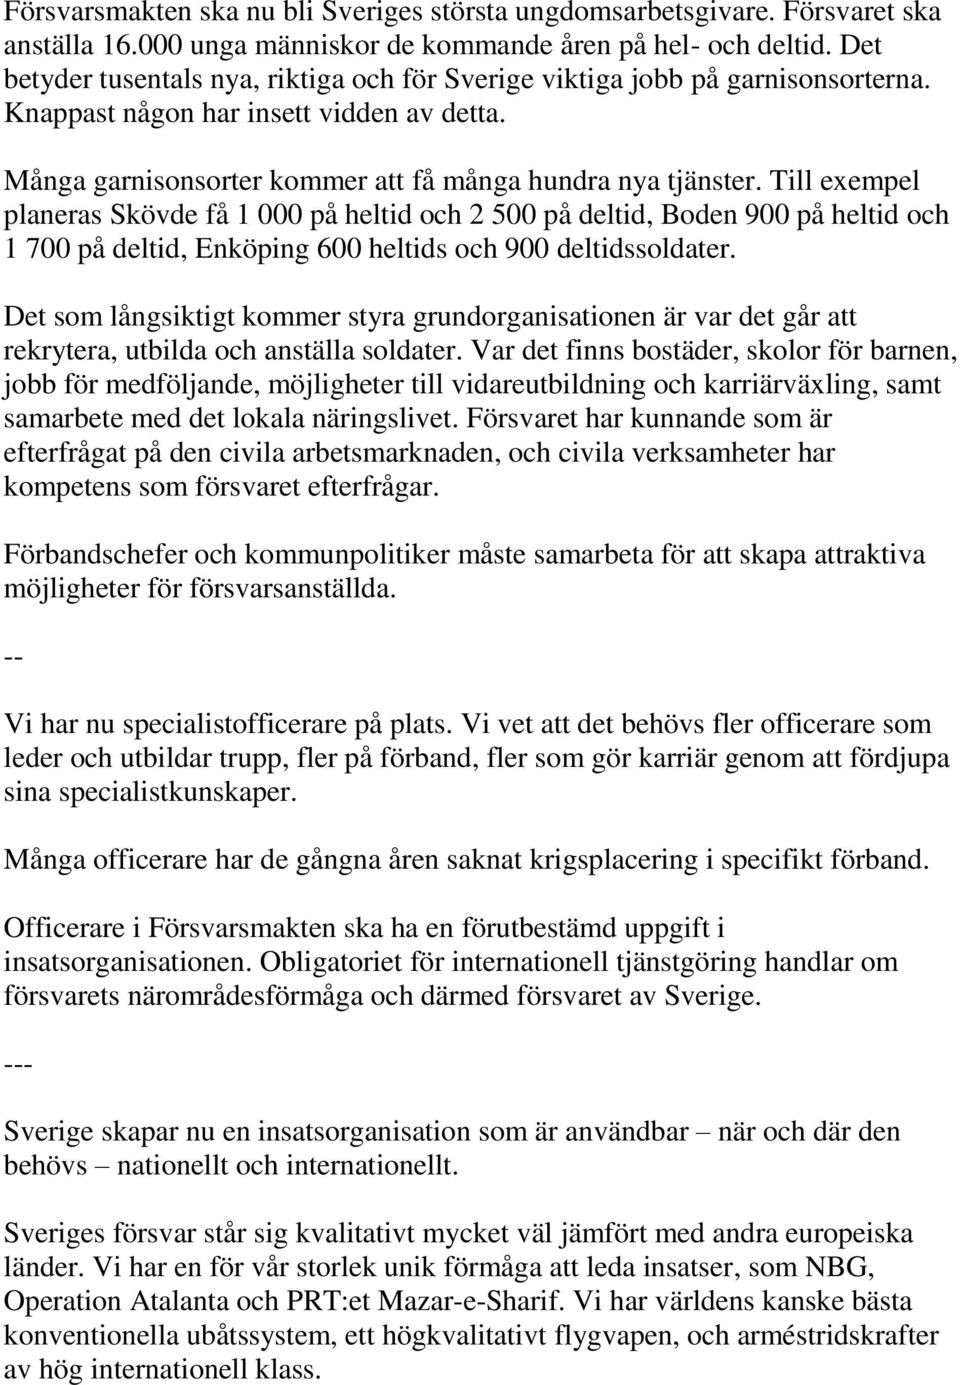 Till exempel planeras Skövde få 1 000 på heltid och 2 500 på deltid, Boden 900 på heltid och 1 700 på deltid, Enköping 600 heltids och 900 deltidssoldater.